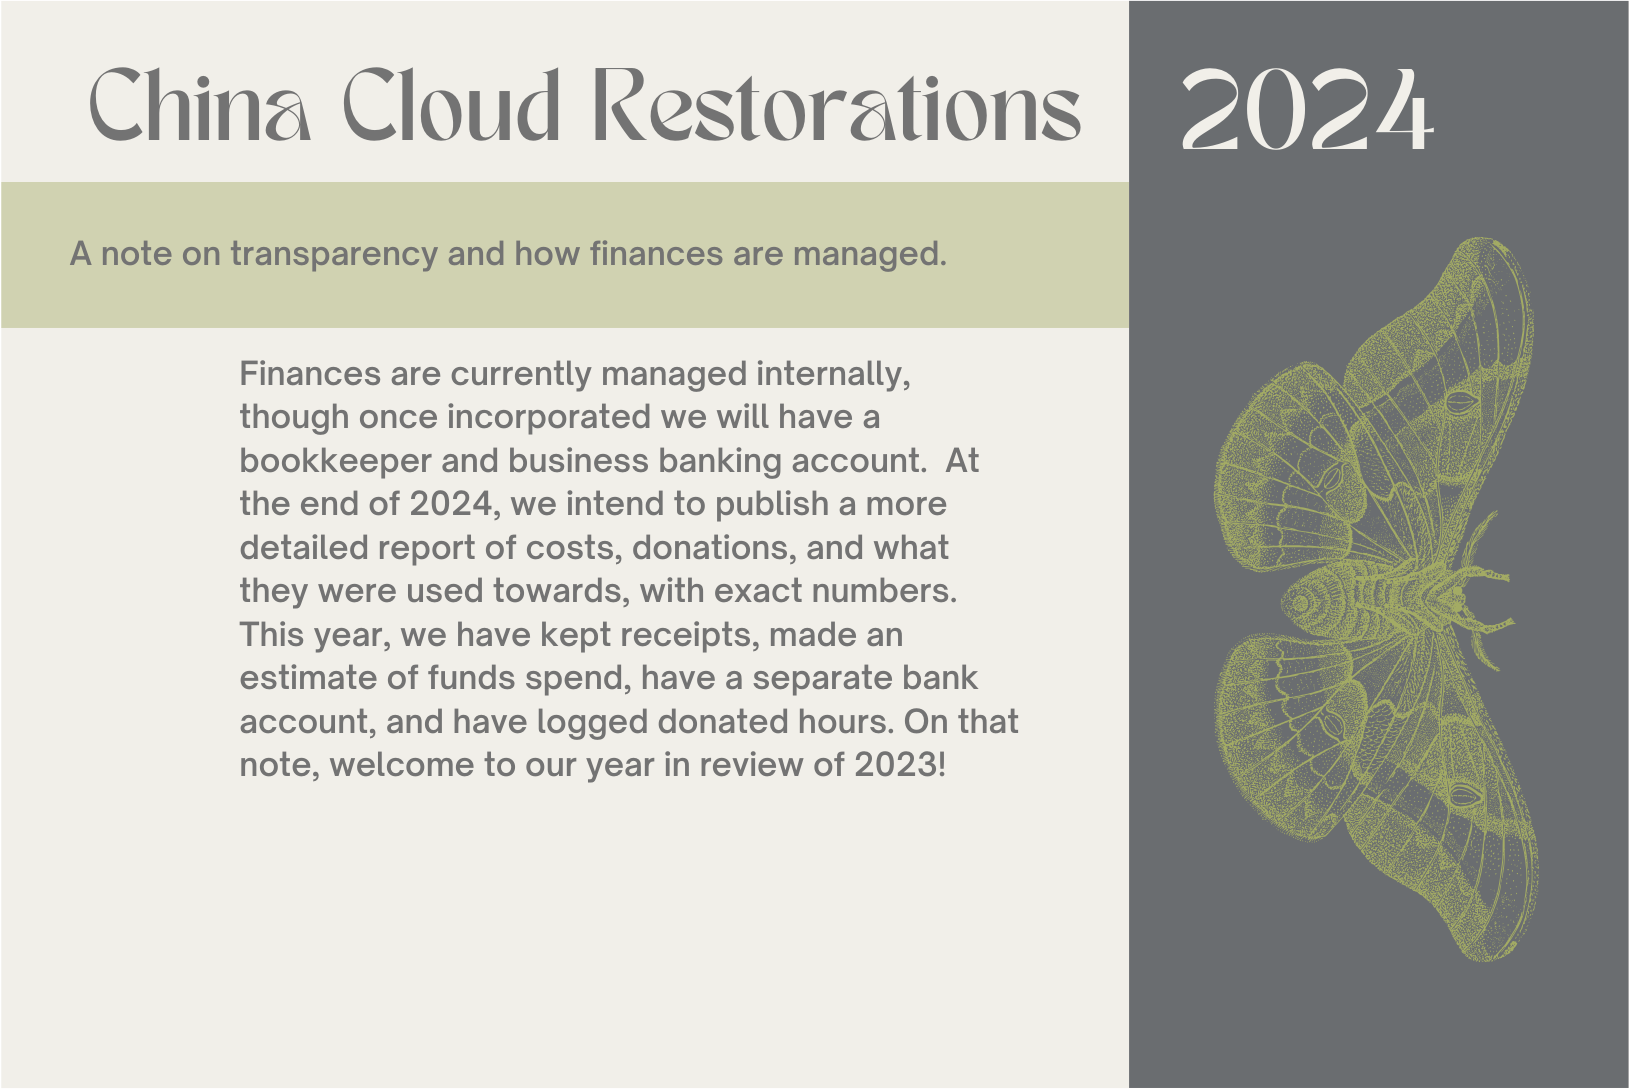 China Cloud Restorations 2024-3 copy 7.png